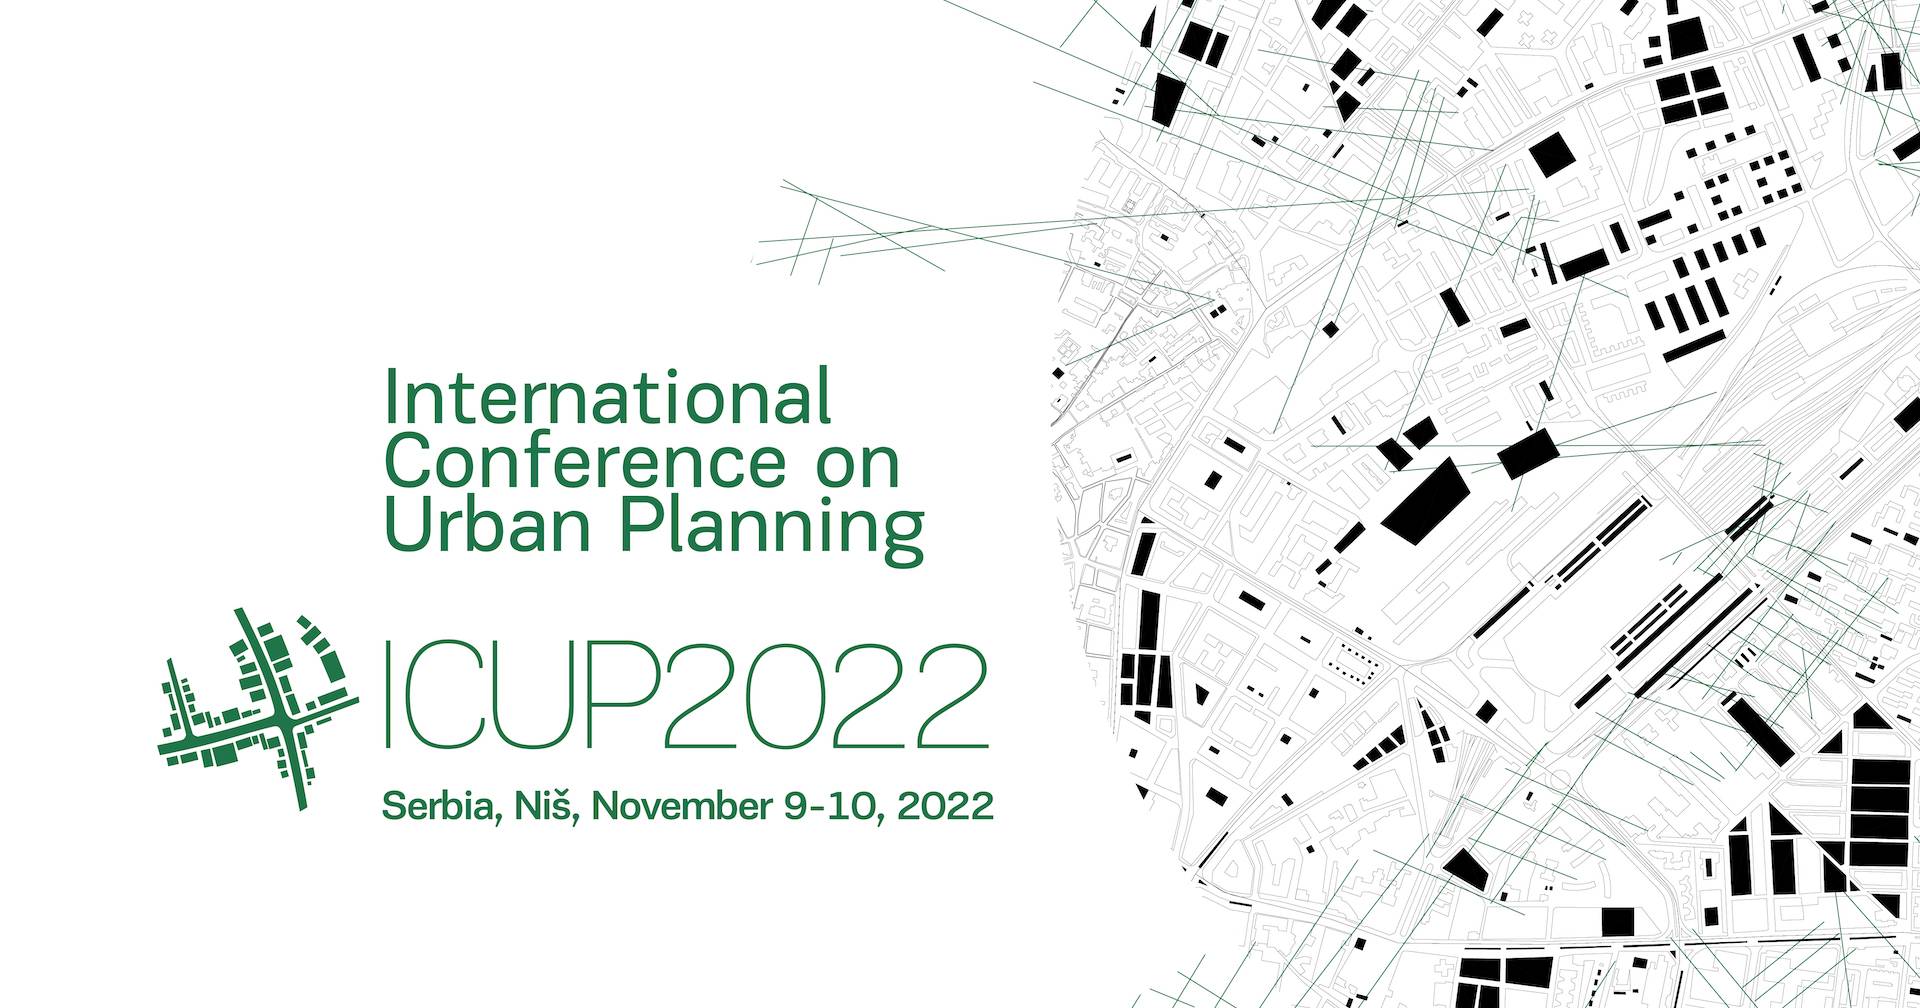 Међународна конференција ICUP2022 одржава се у НТП Ниш